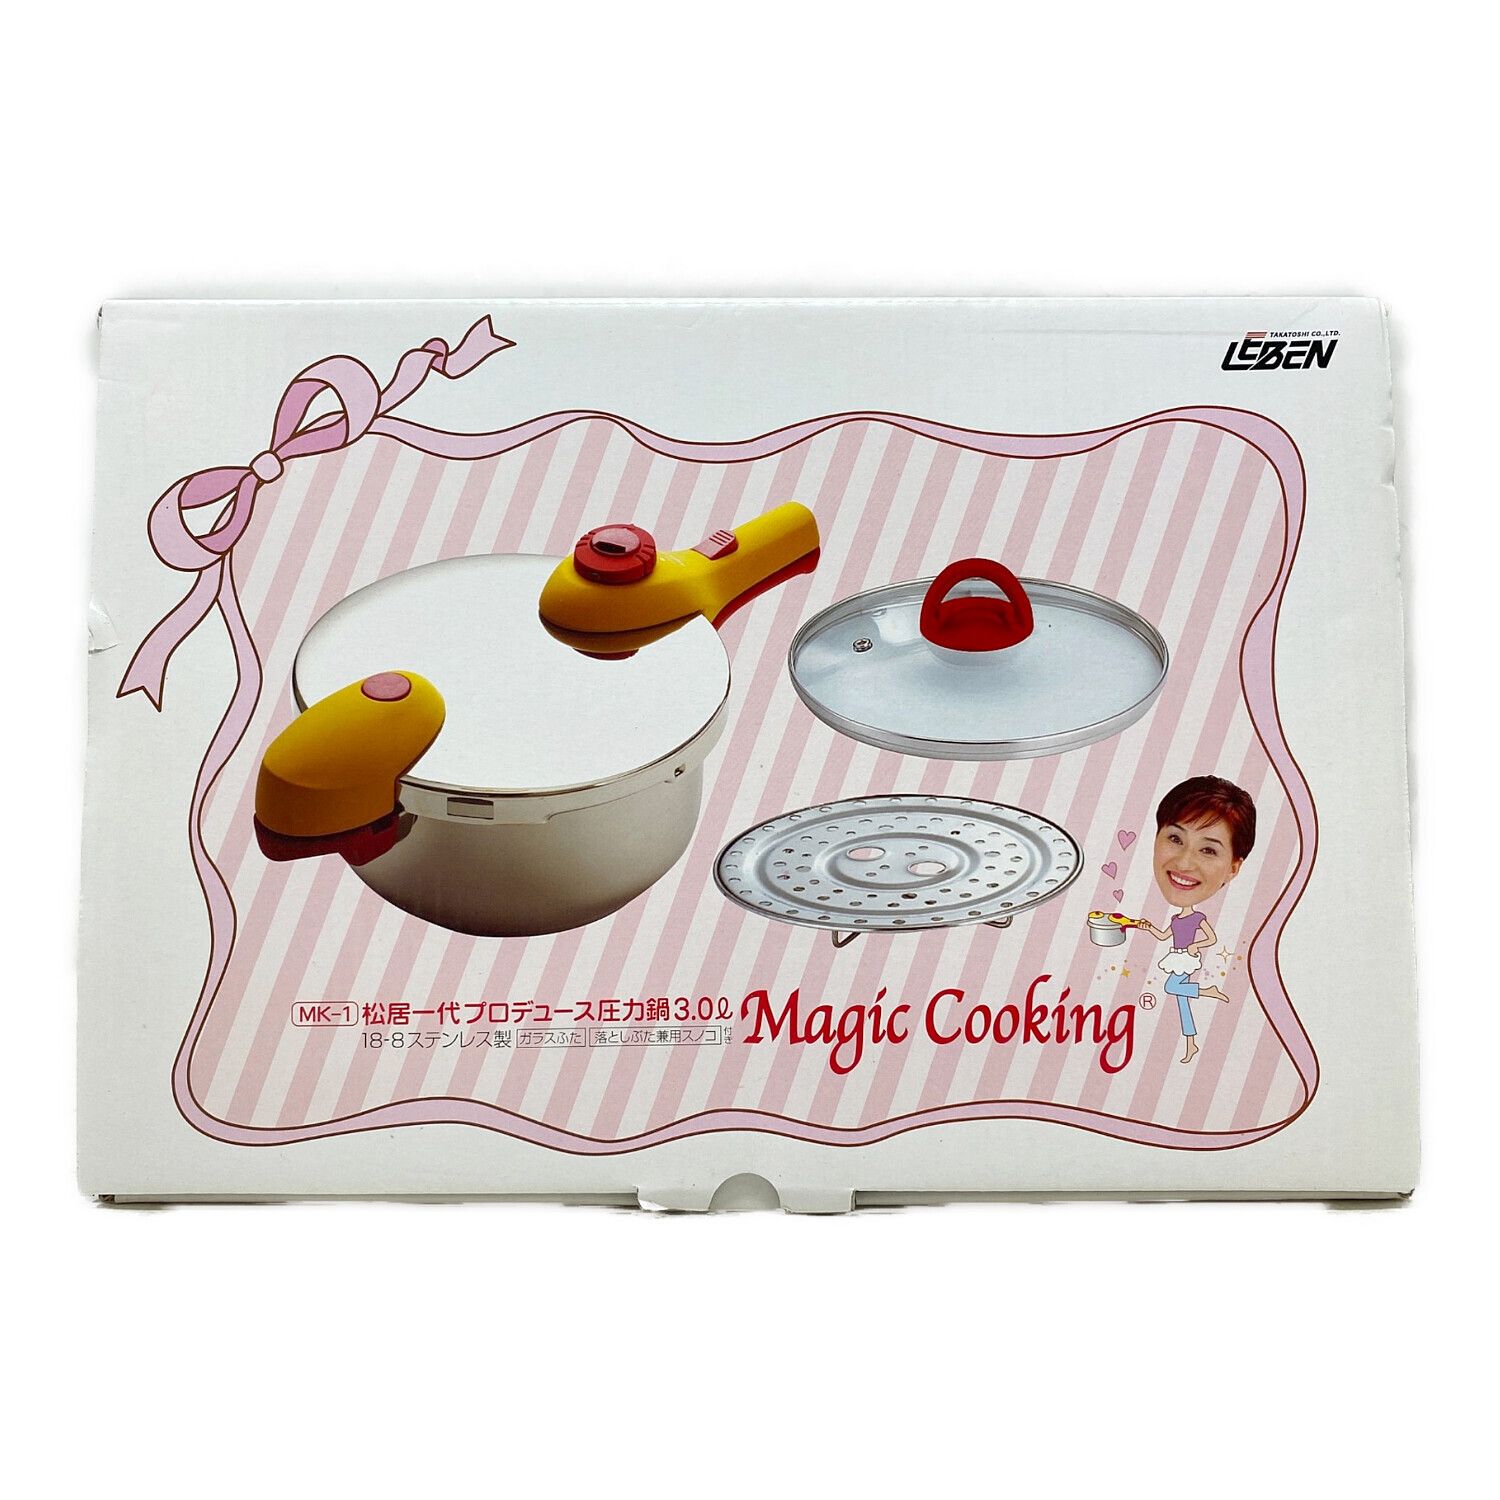 松居一代プロデュース 圧力鍋 Magic Cooking 3.0L MK-1 - 調理器具